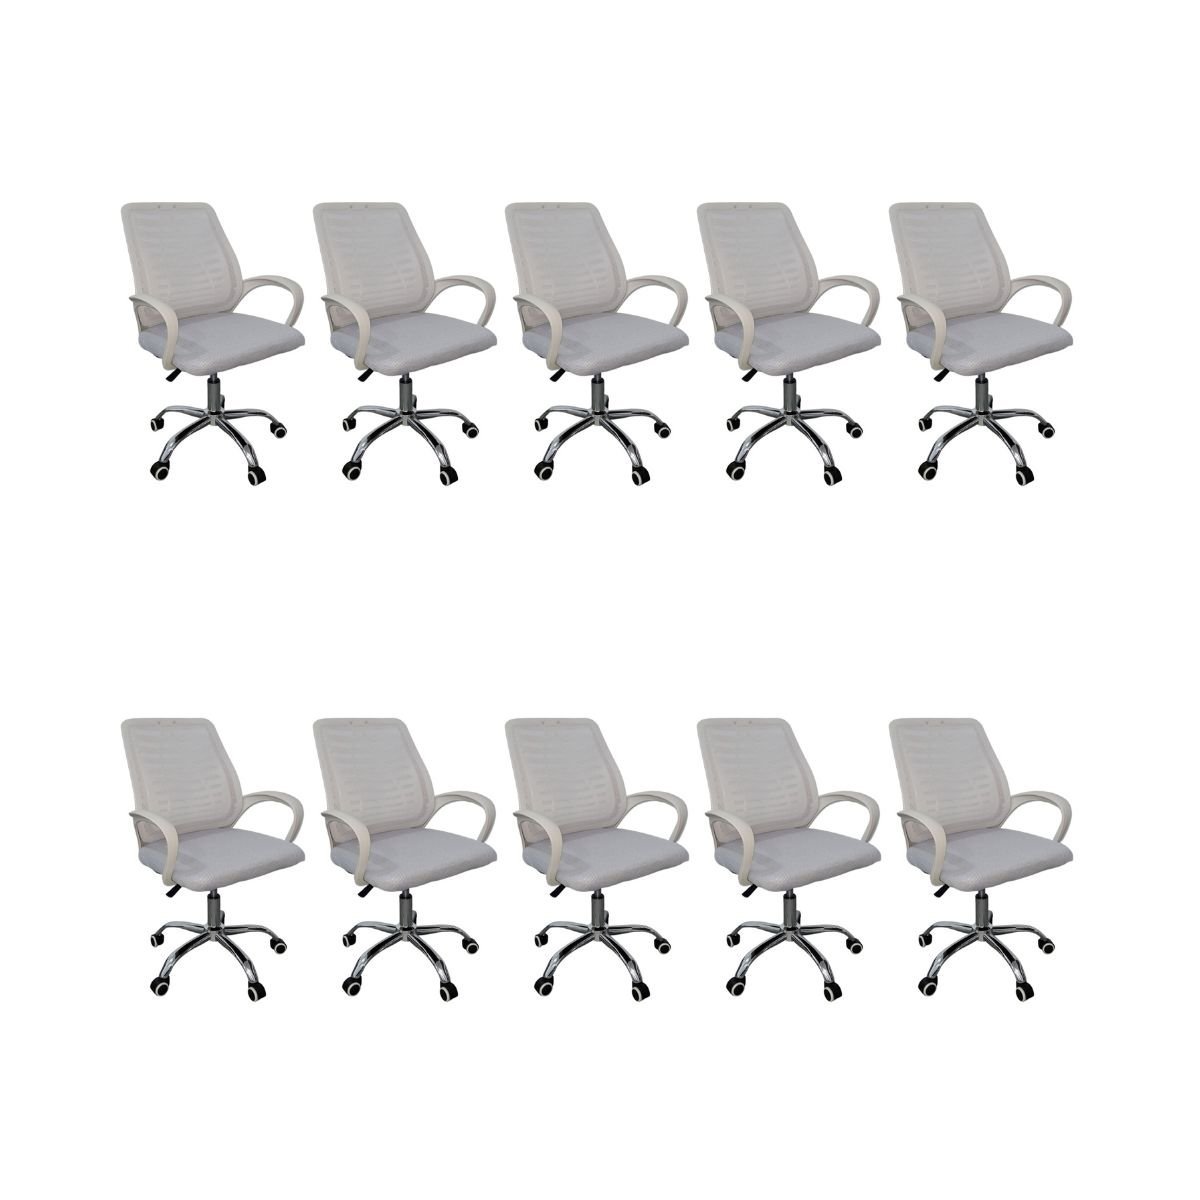 Kit 10 Cadeiras de Escritório Esteirinha Tela Mesh Branco